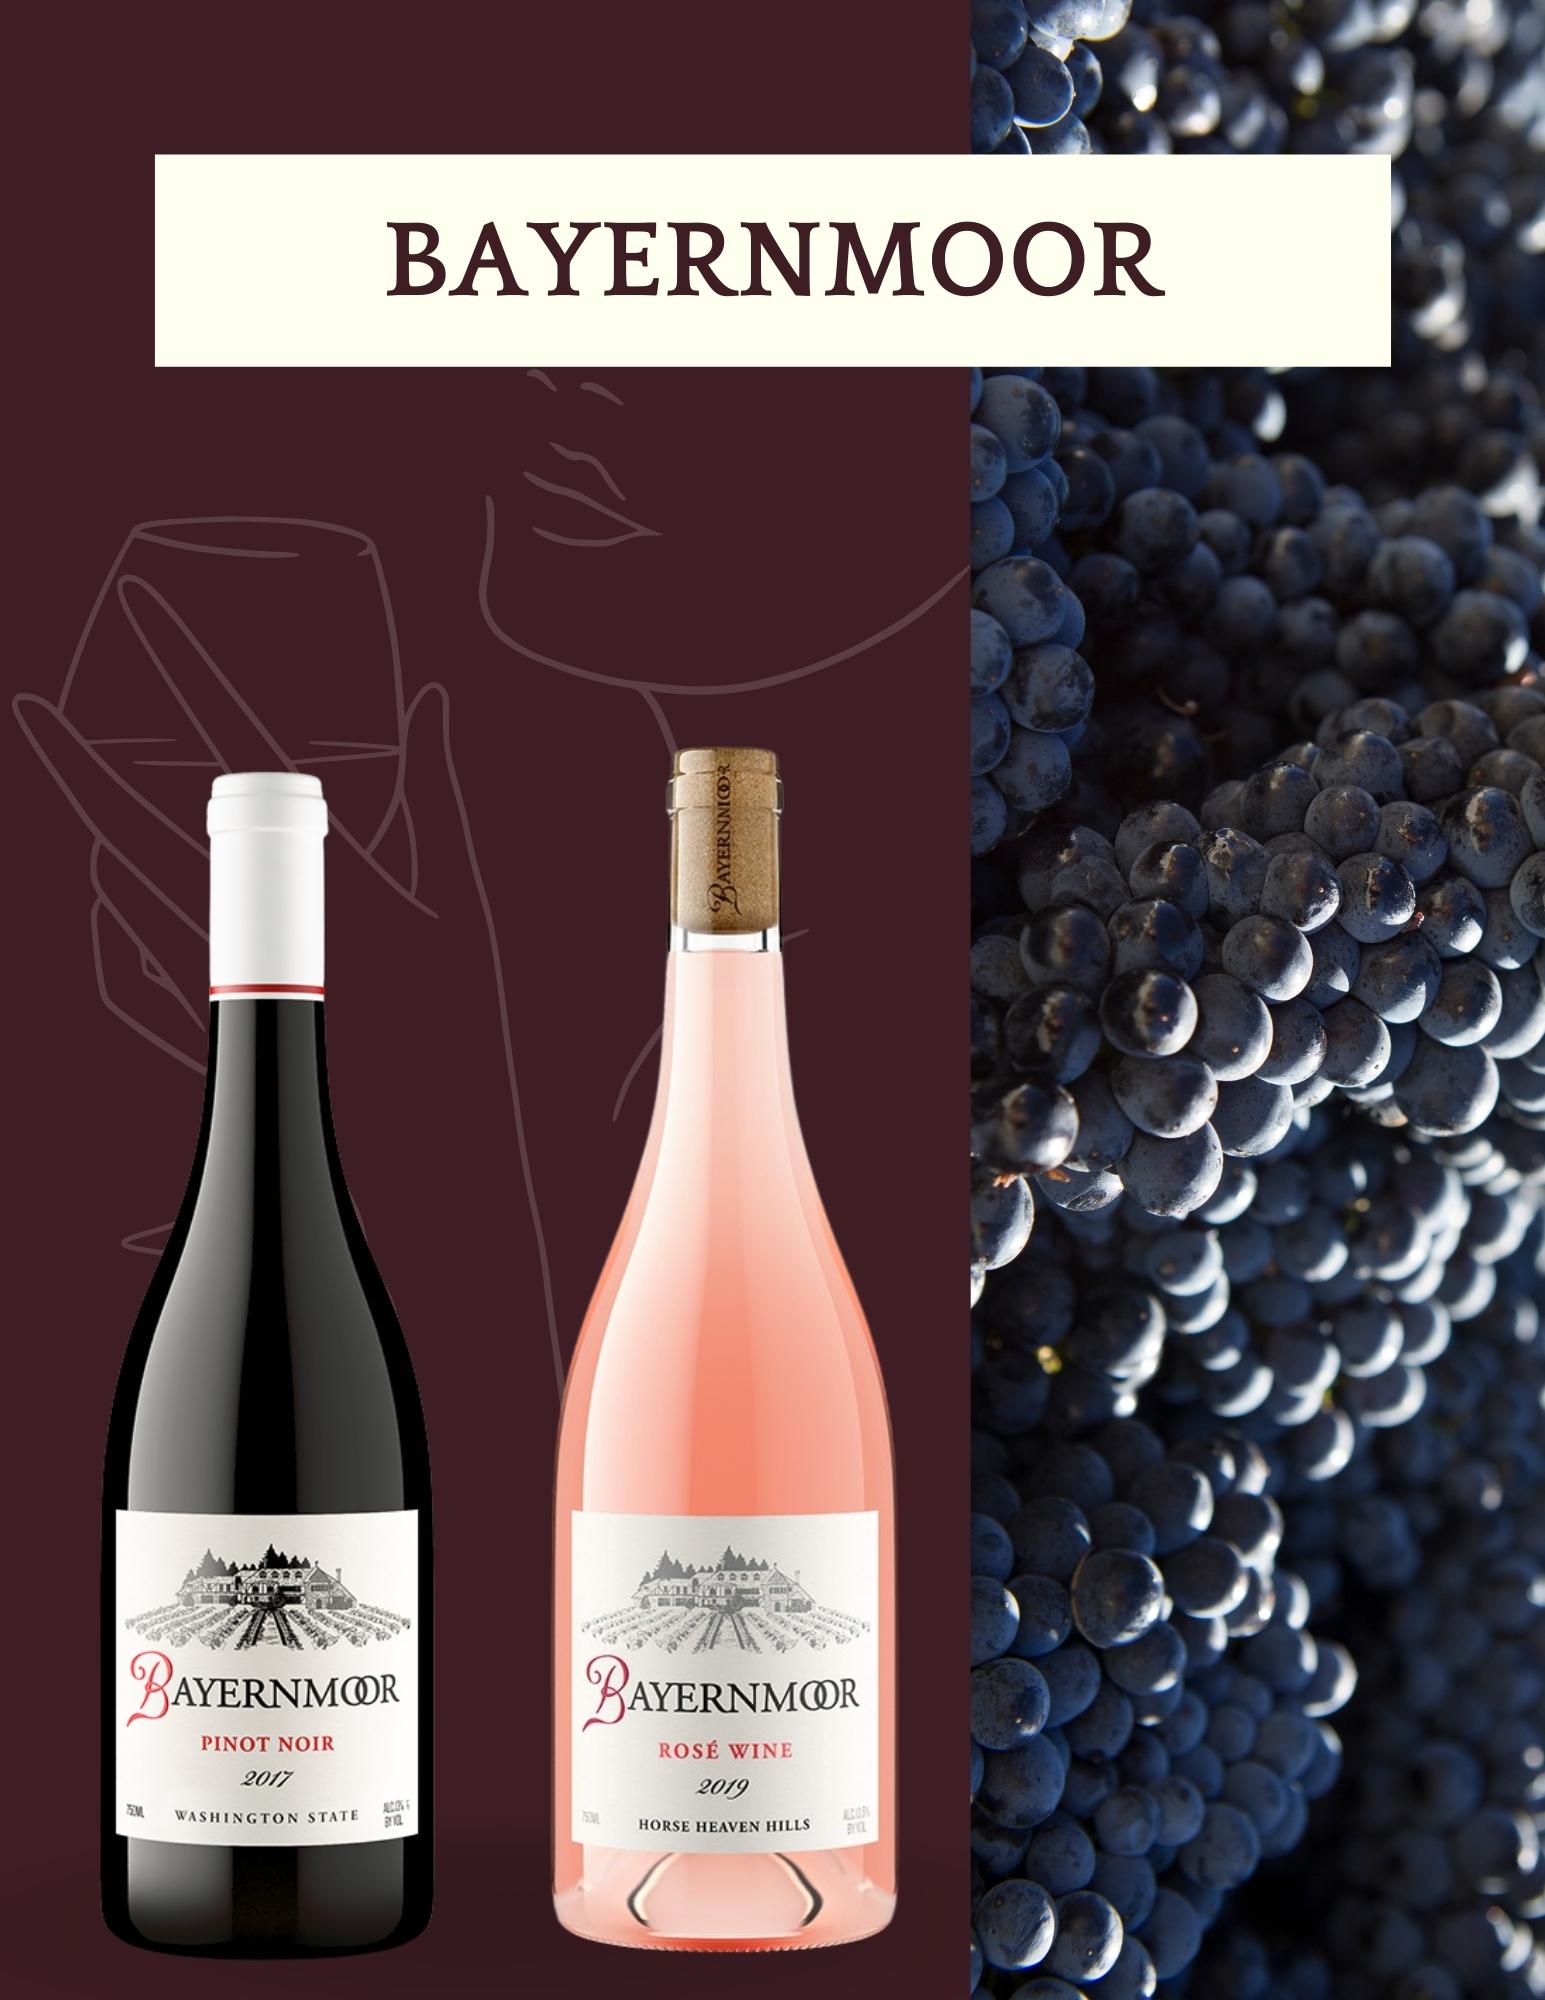 Bayernmoor wine reviewed by Windermere Mill Creek